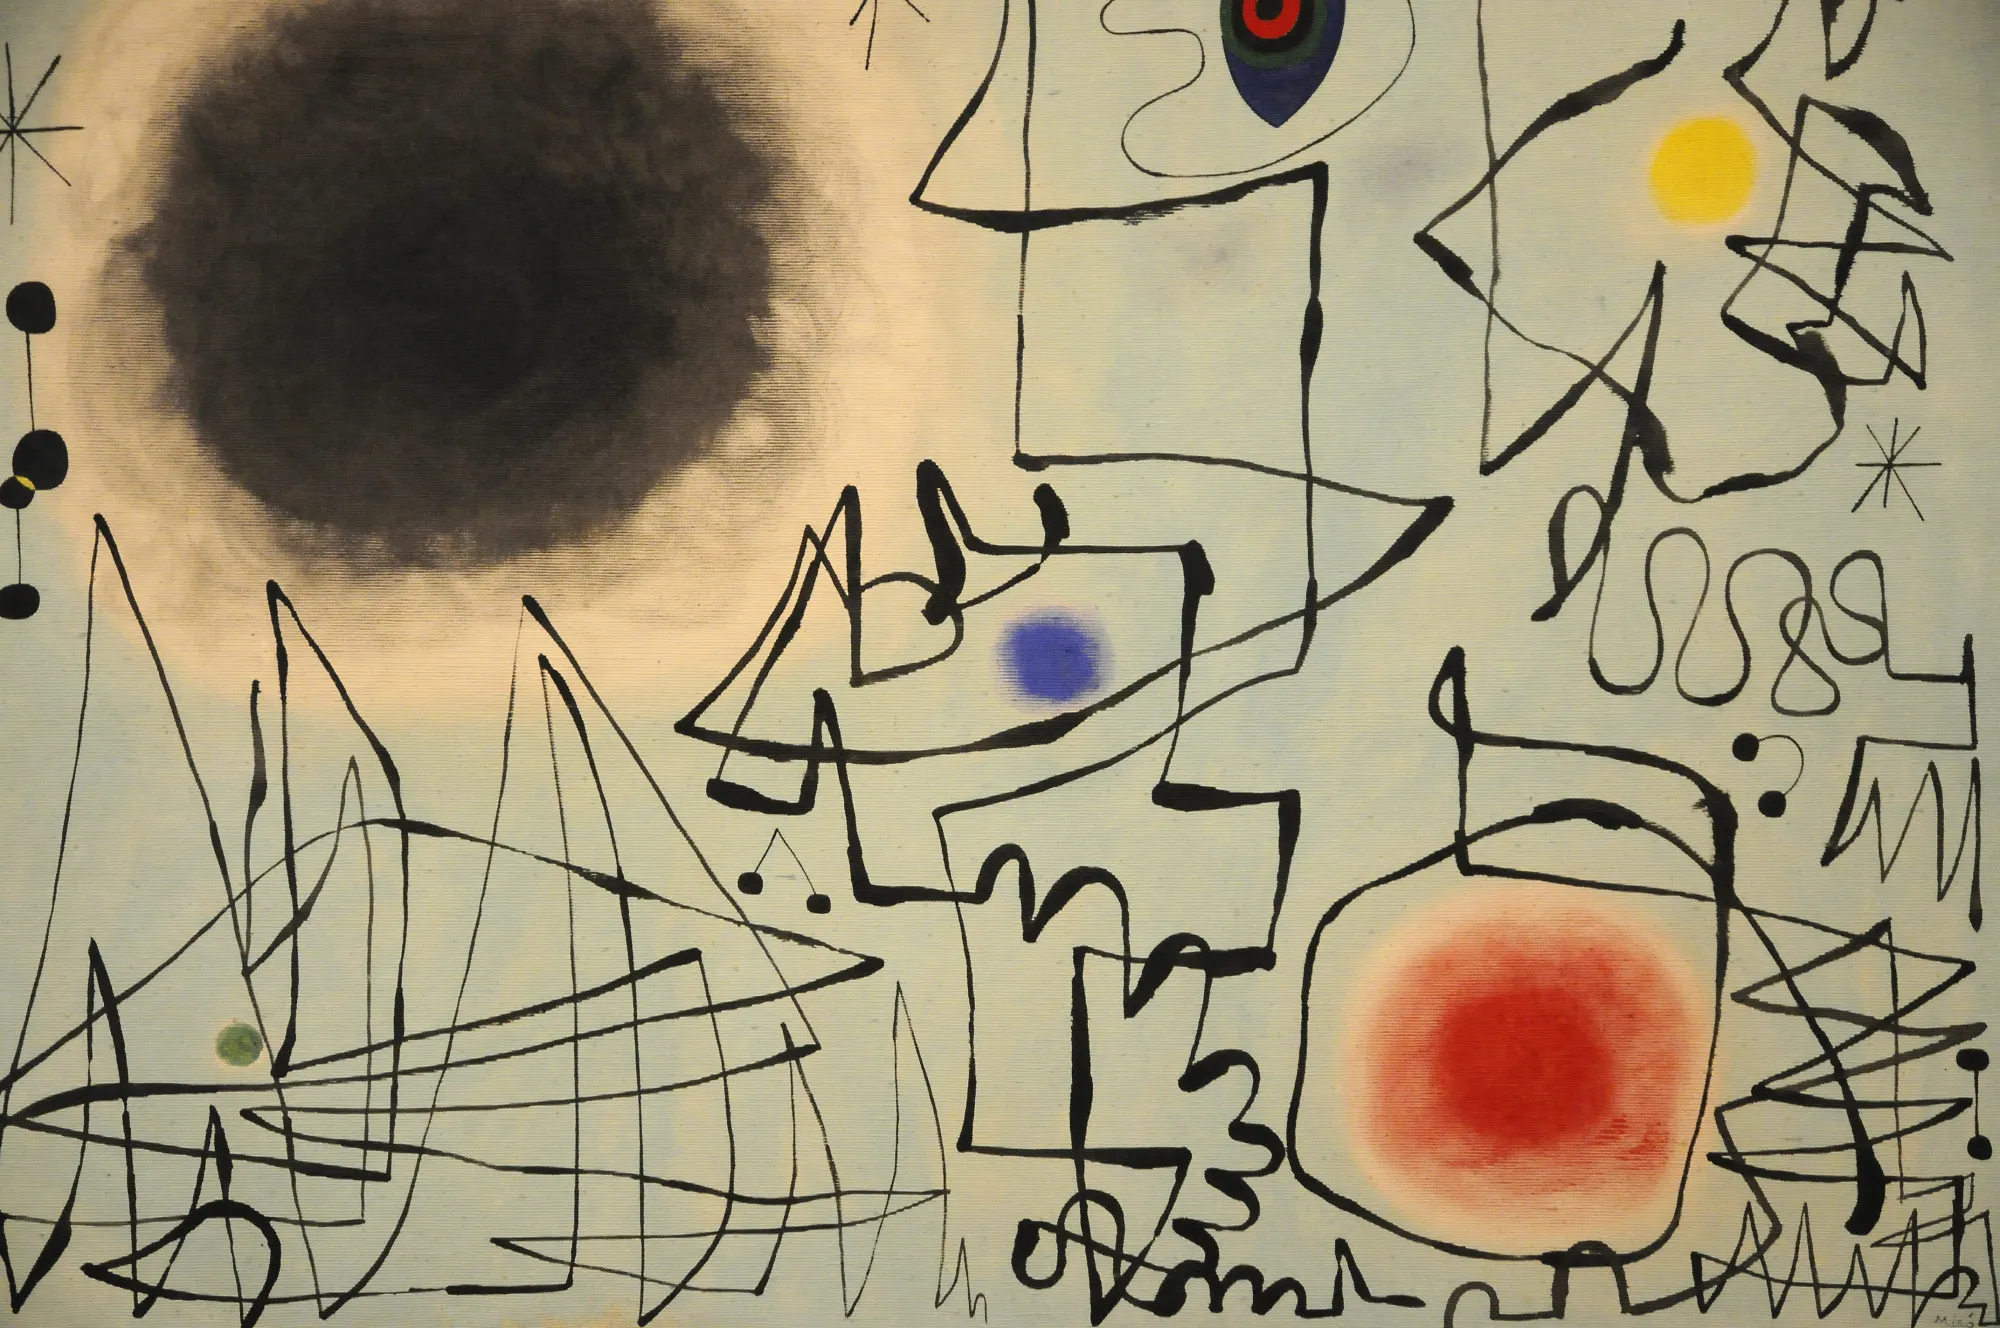 Фондация Жоана Миро (Fundació Joan Miró)